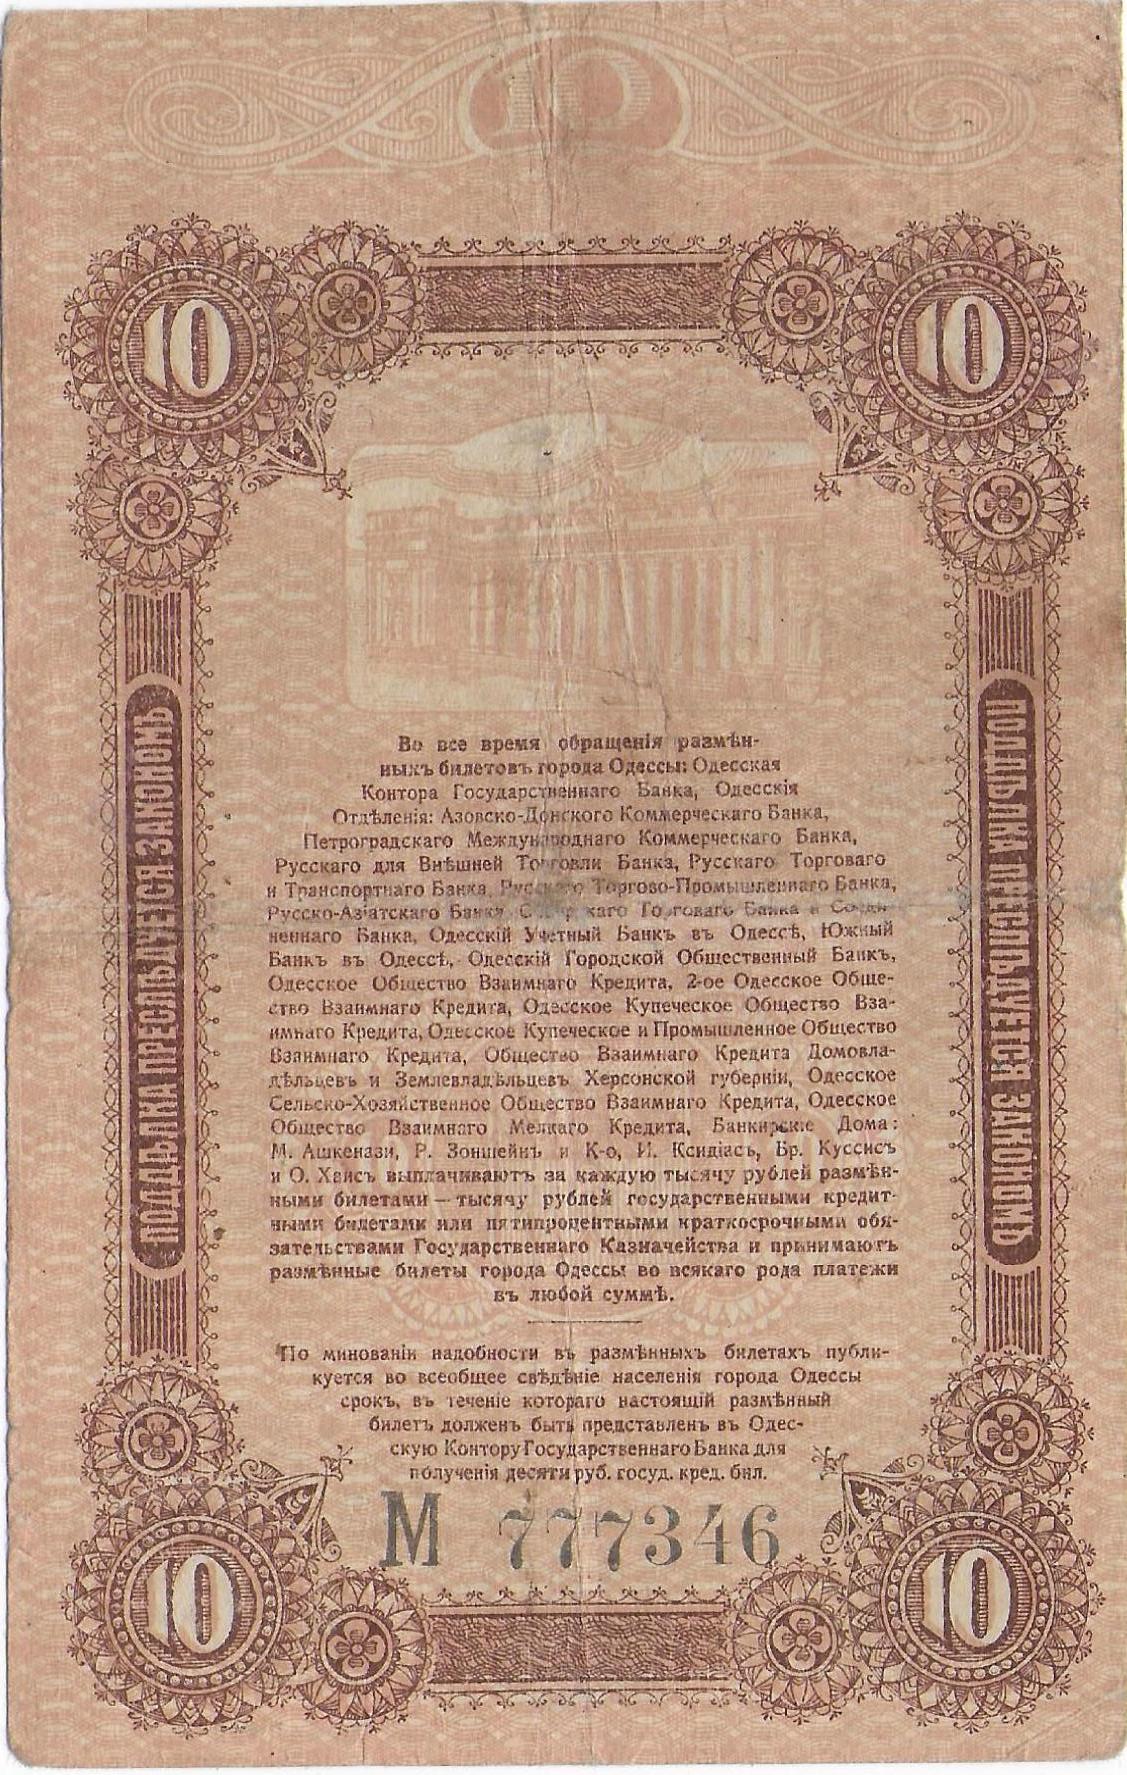 Odessa 10 Rubles 1917  P-S336 back.jpg